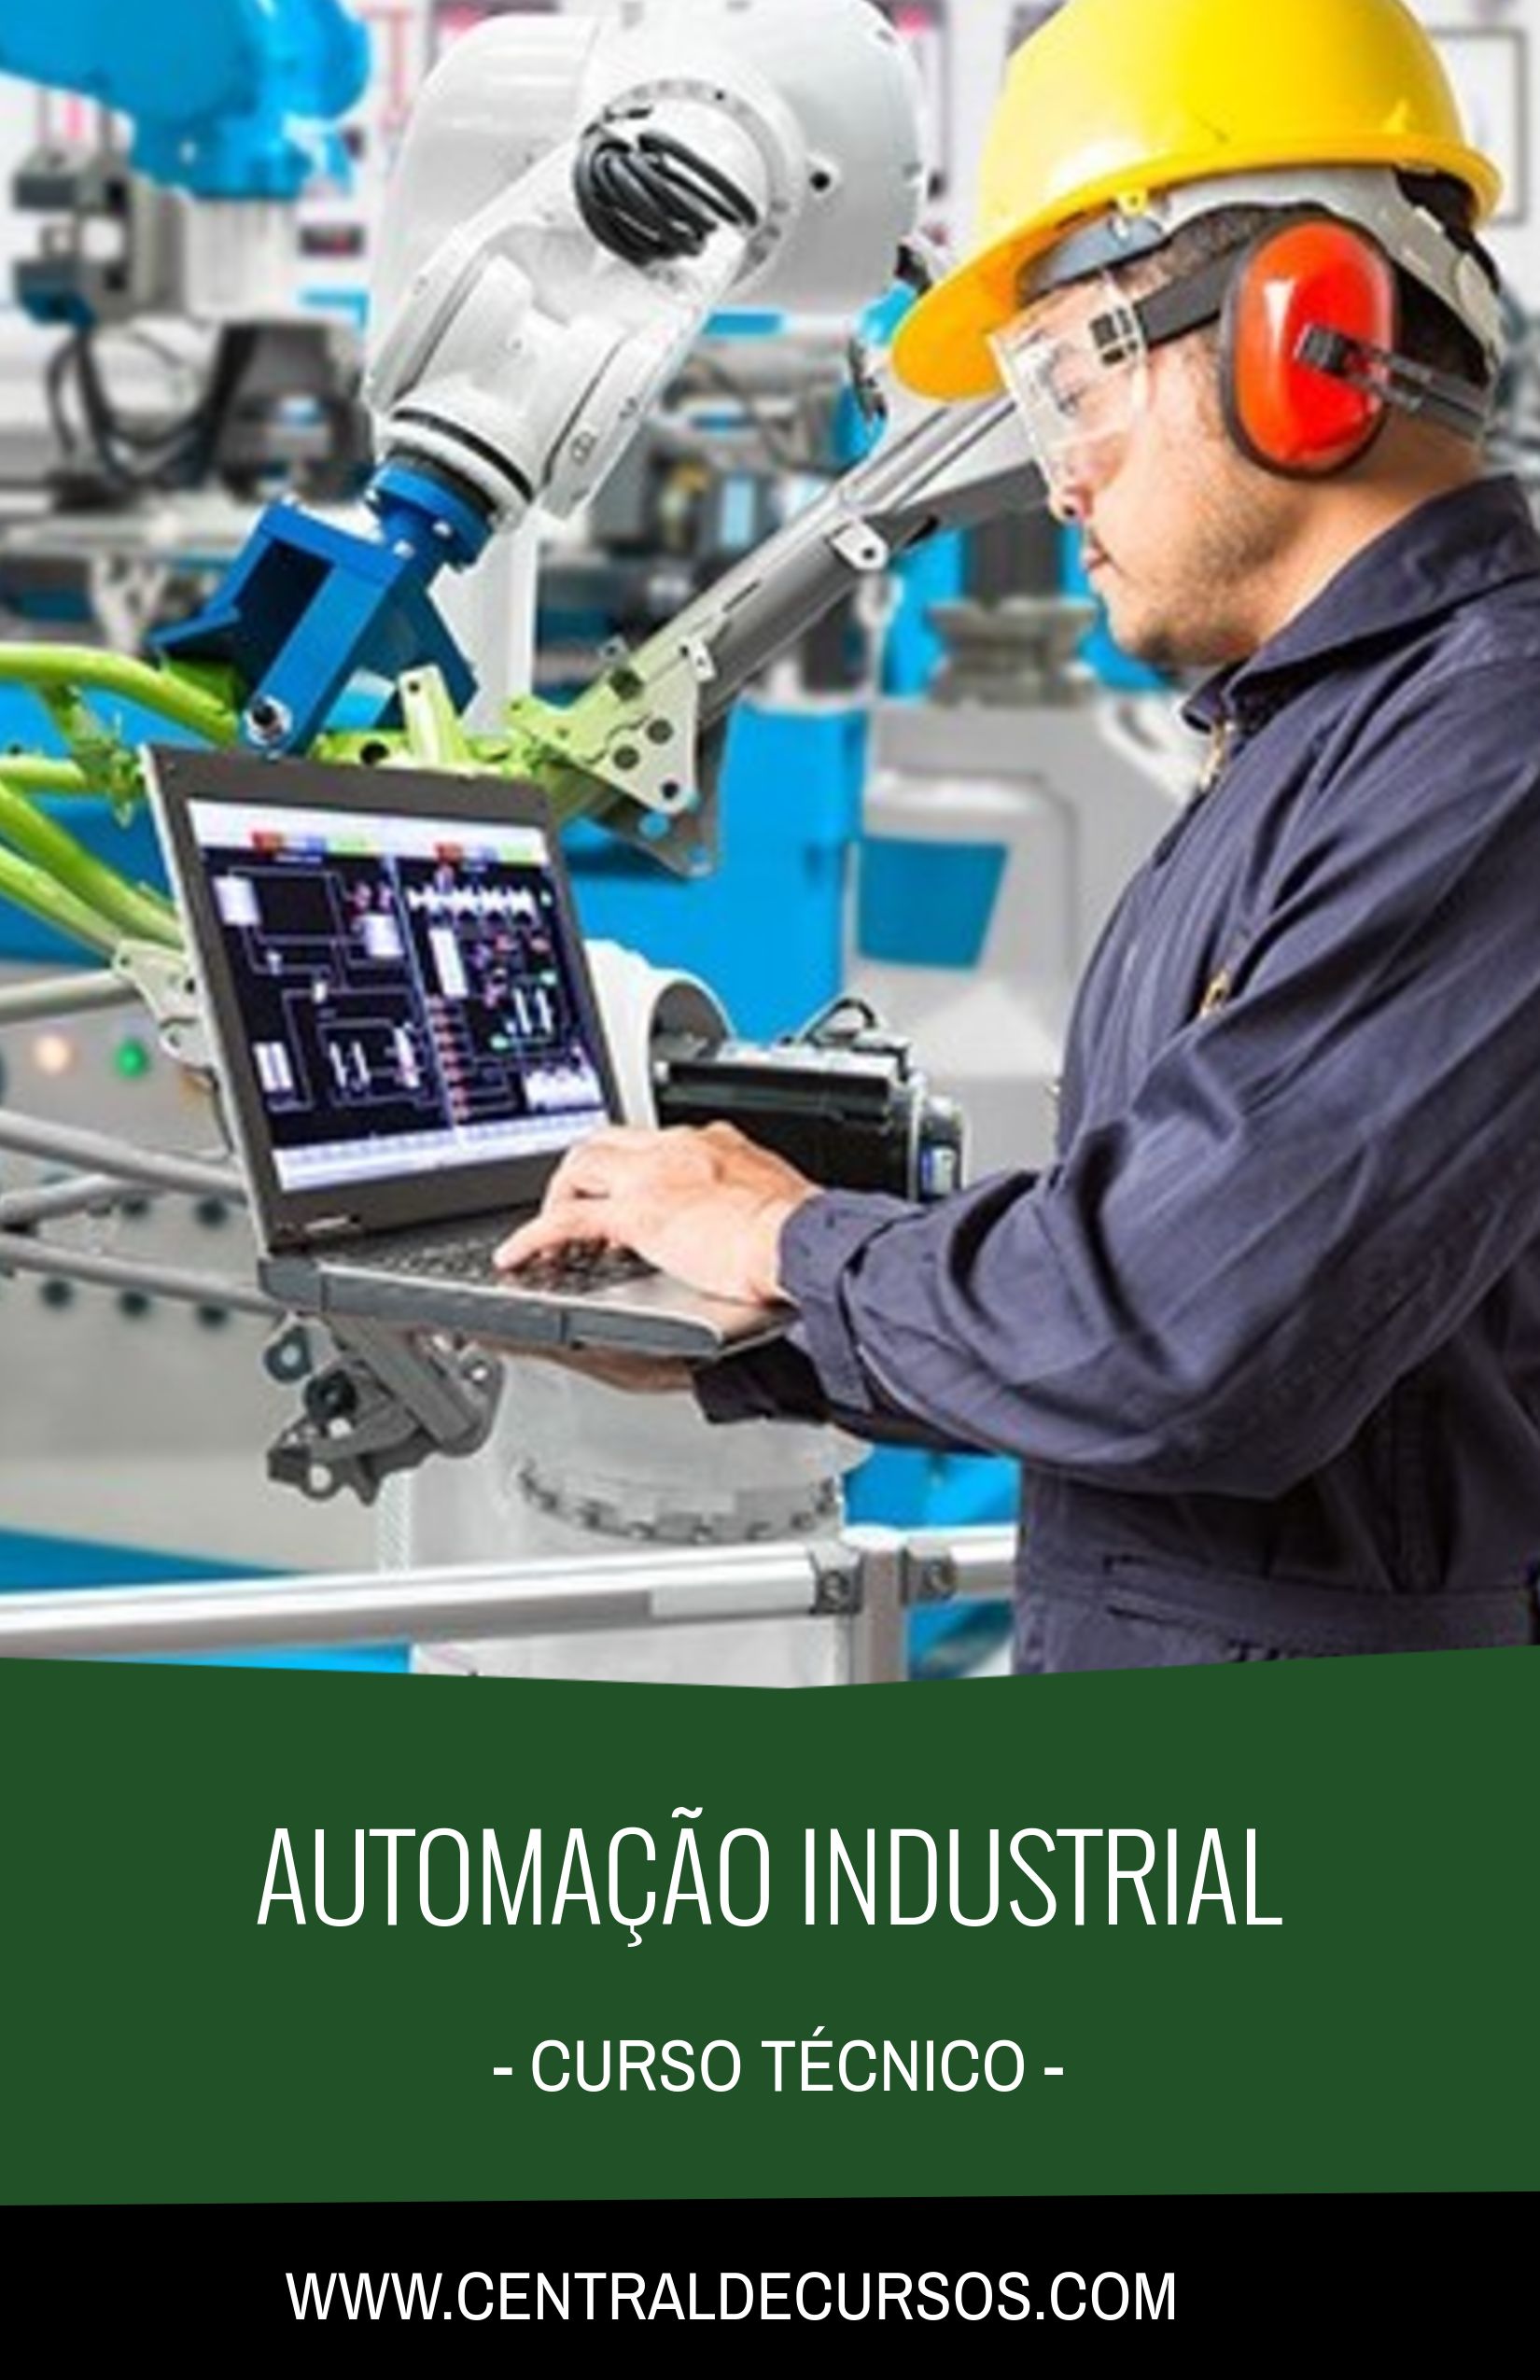 Curso técnico de automação industrial em Uberlândia